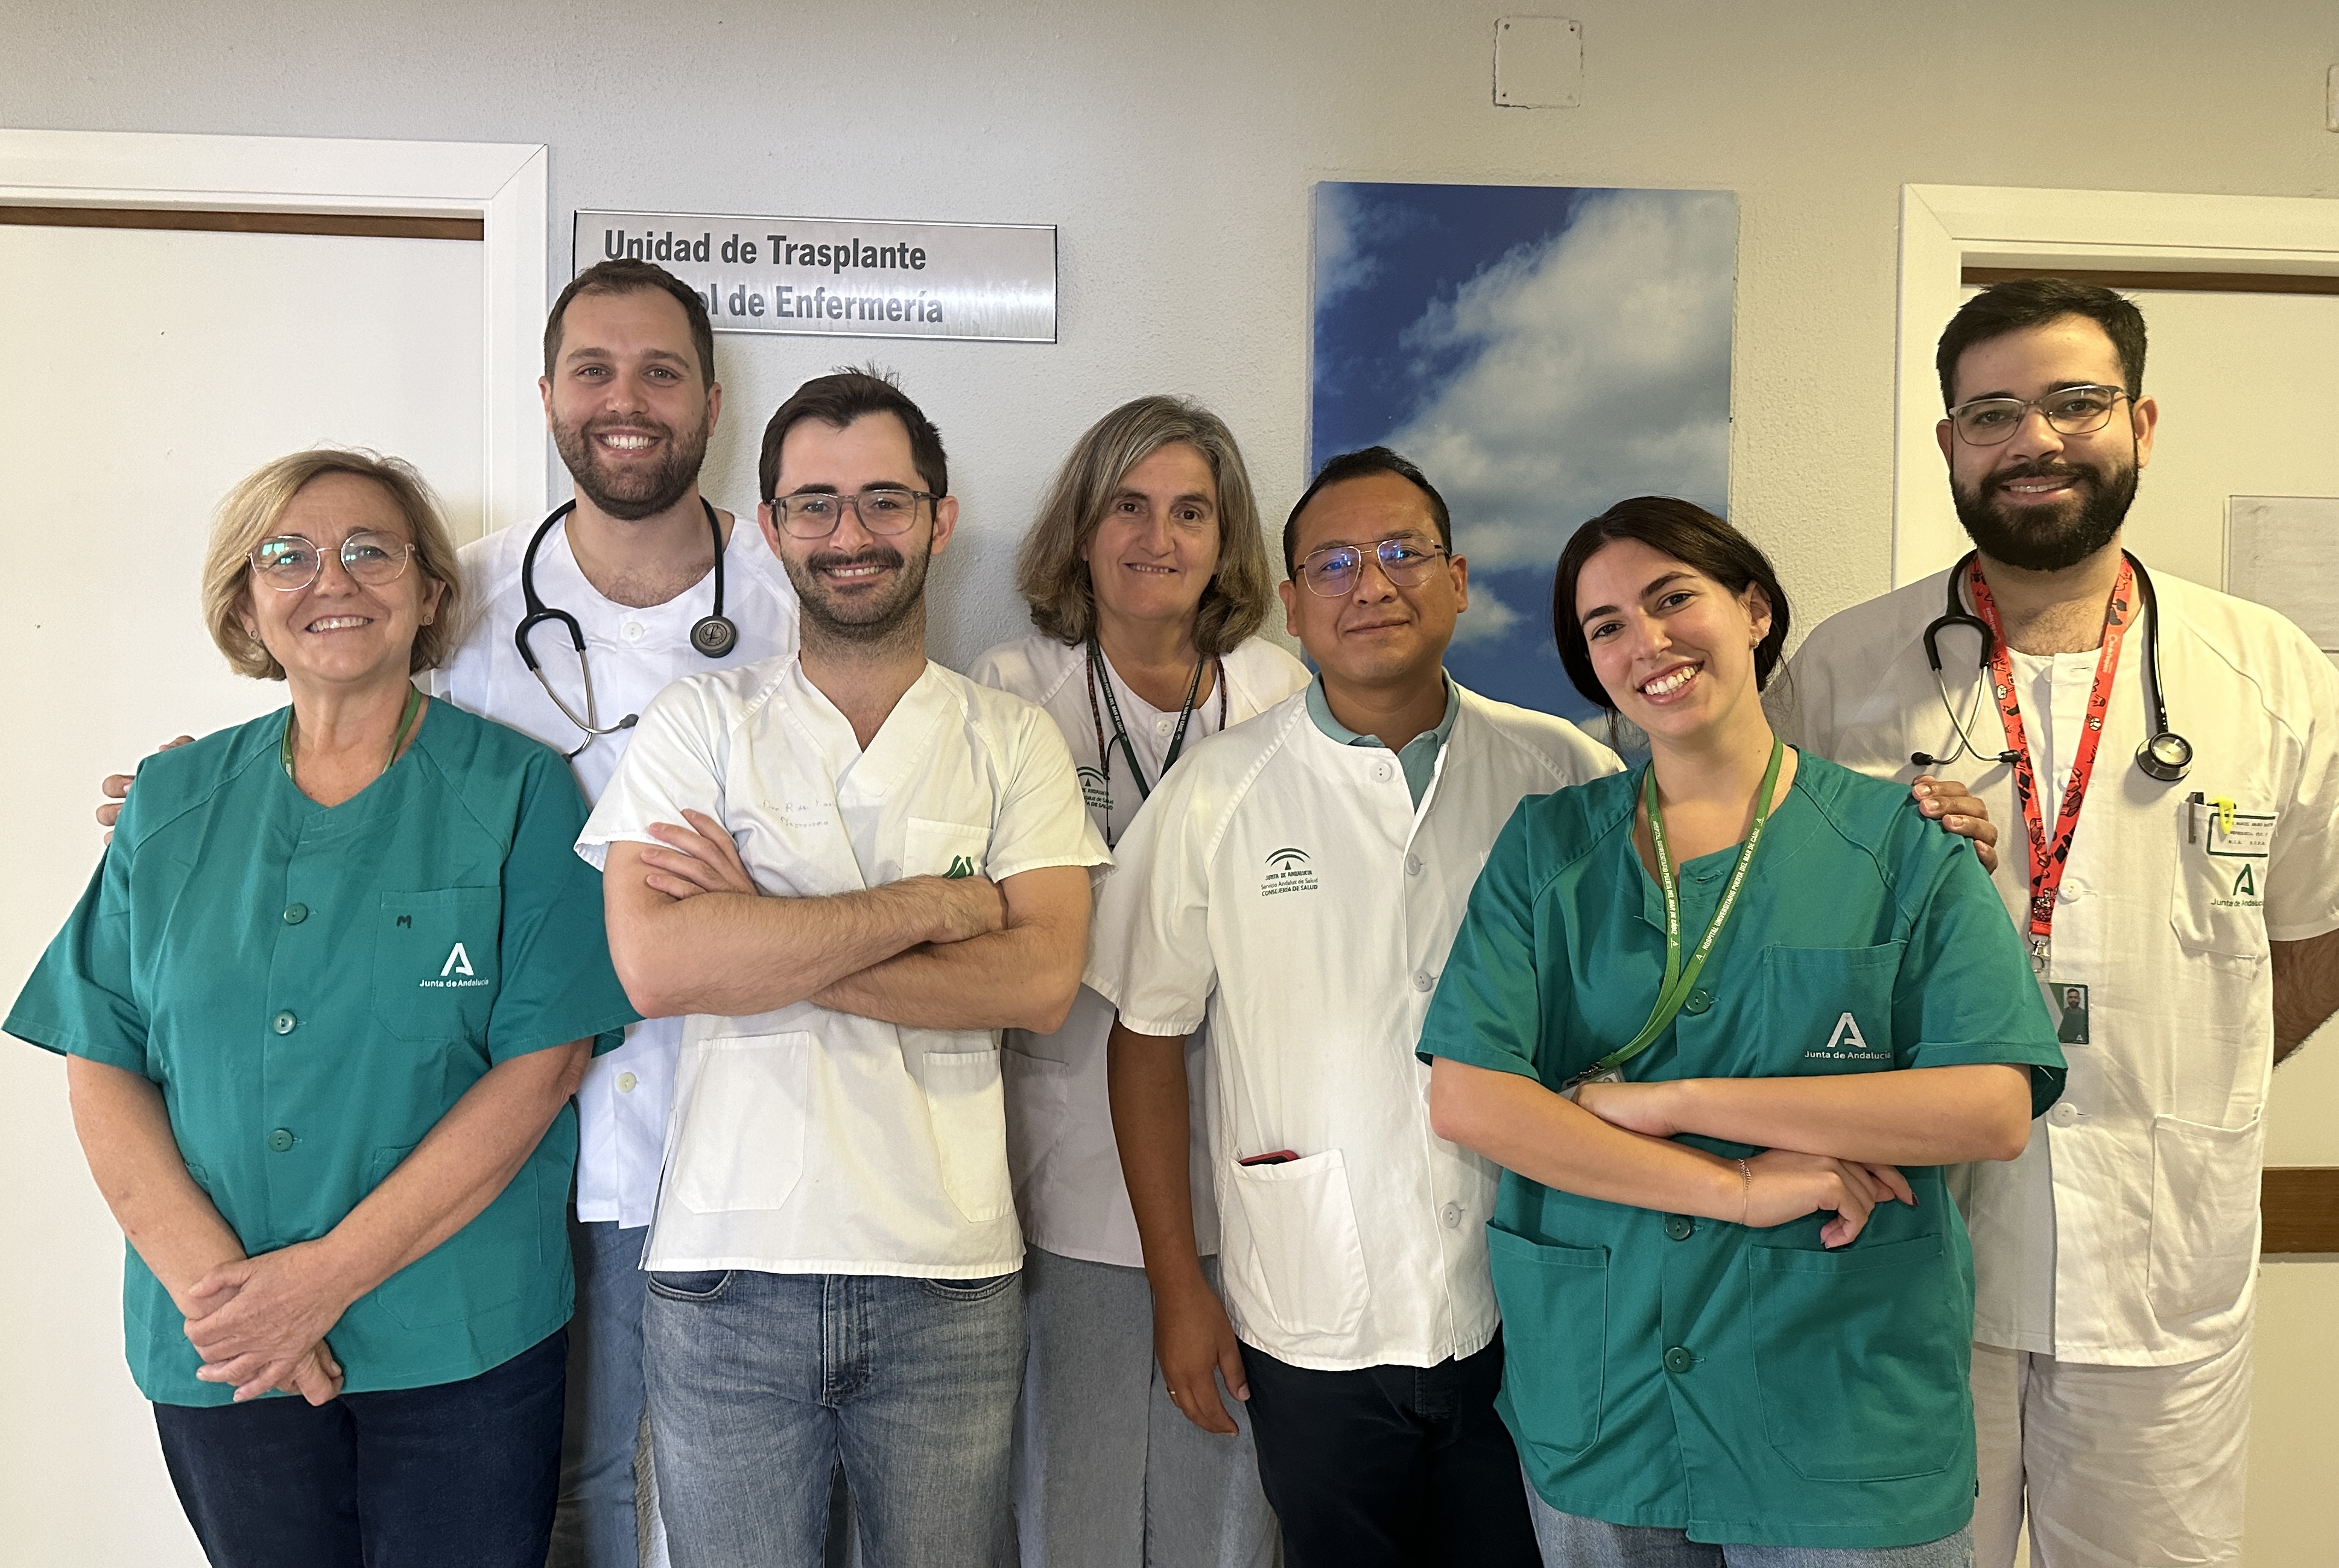 Nota de prensa - Un estudio realizado en tres hospitales andaluces demuestra por primera vez que los nuevos tratamientos para la diabetes (agonistas del GLP1) son seguros en pacientes con trasplante renal